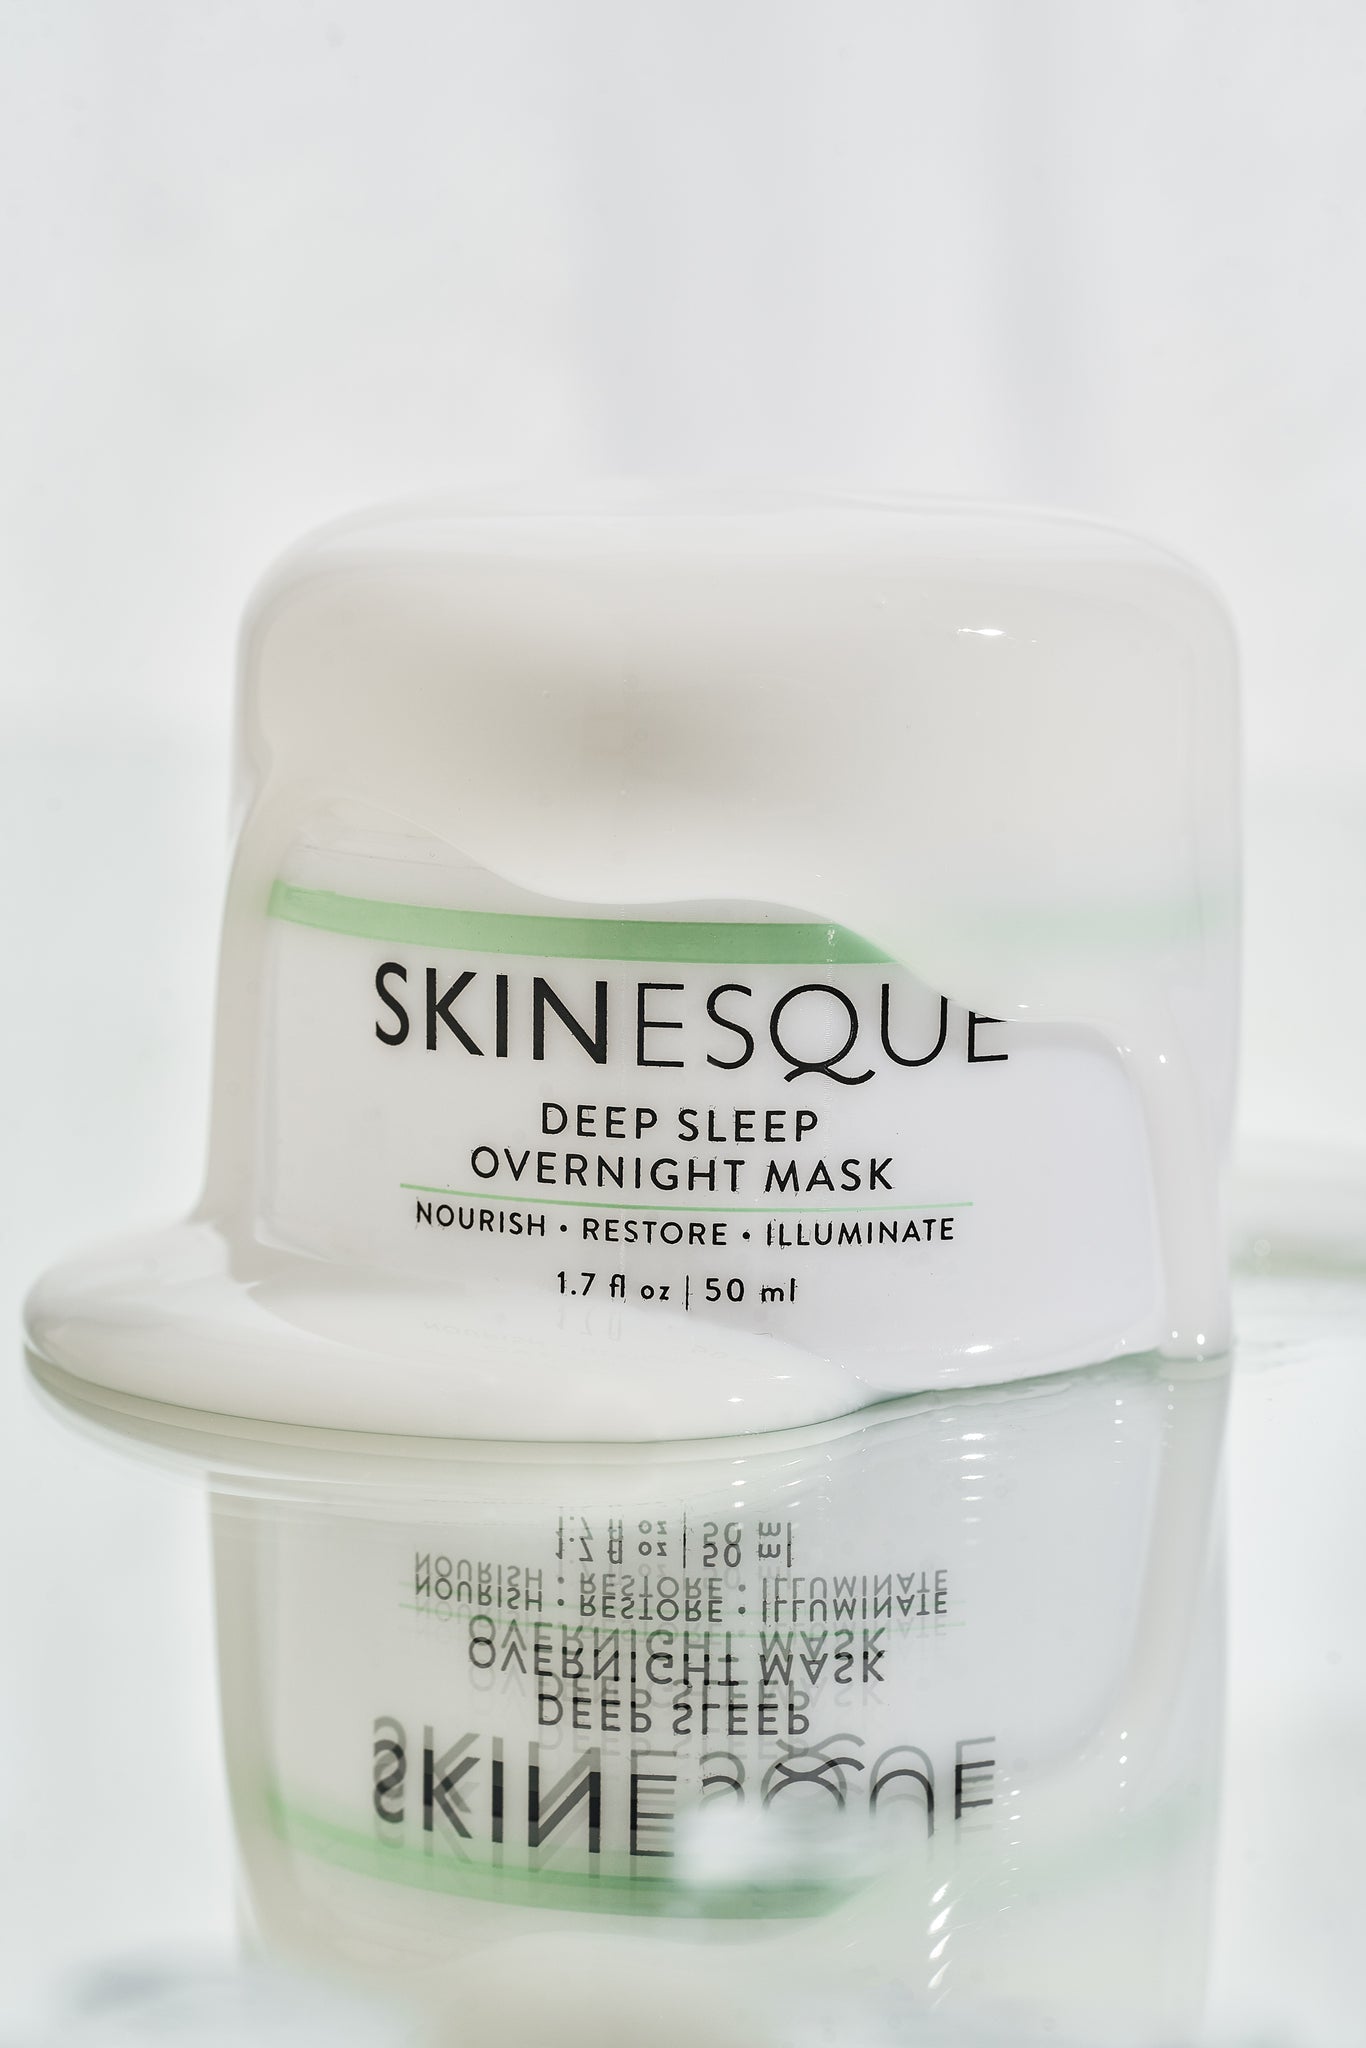 Deep Sleep Overnight Mask - Skinesque